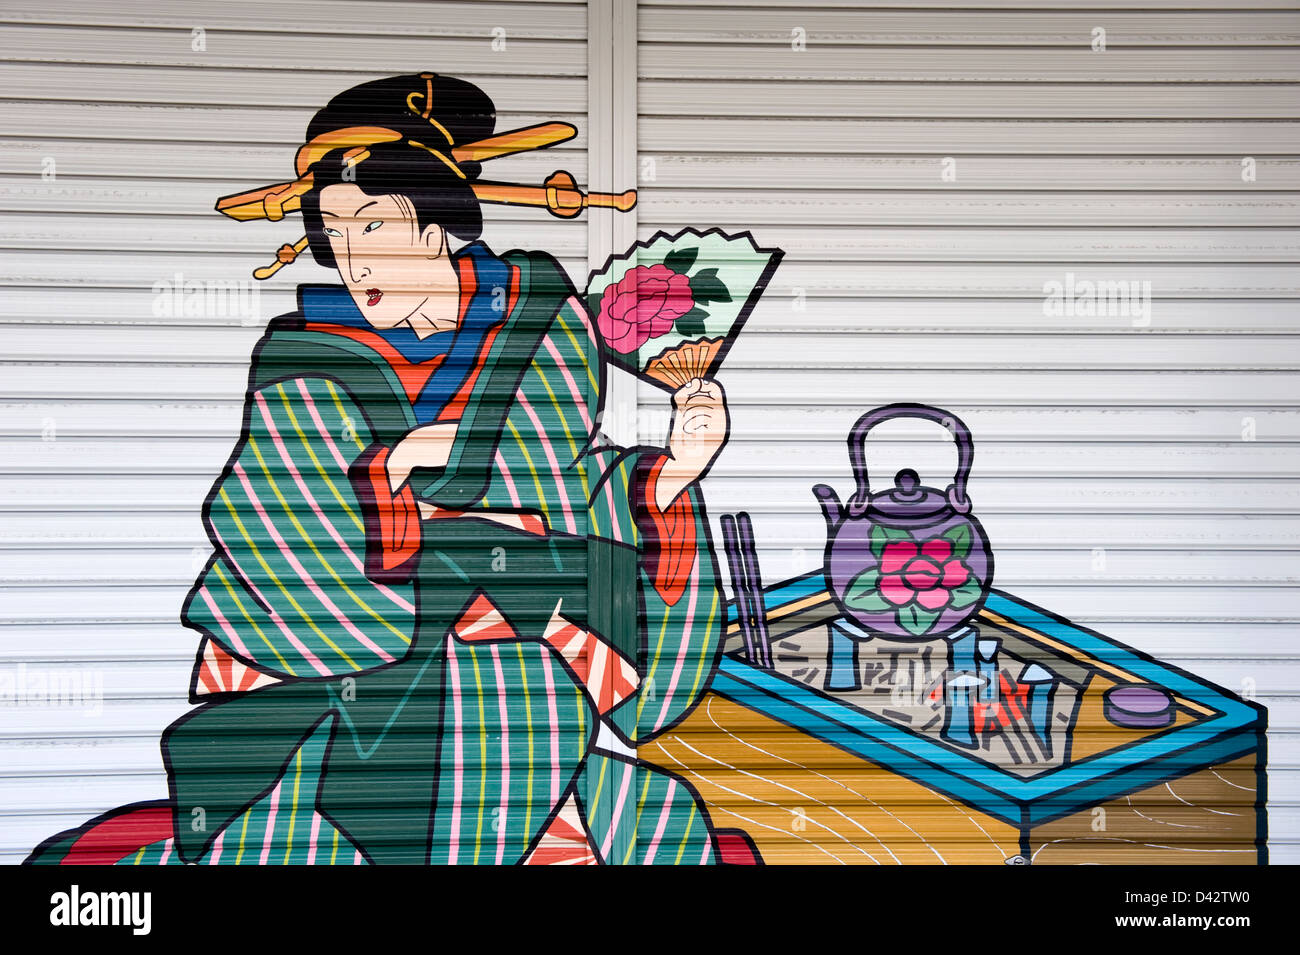 L'Ukiyo-e traditionnel peint style ornent un magasin de détail déclencheur dans l'ancien quartier des divertissements d'Asakusa, Tokyo. Banque D'Images